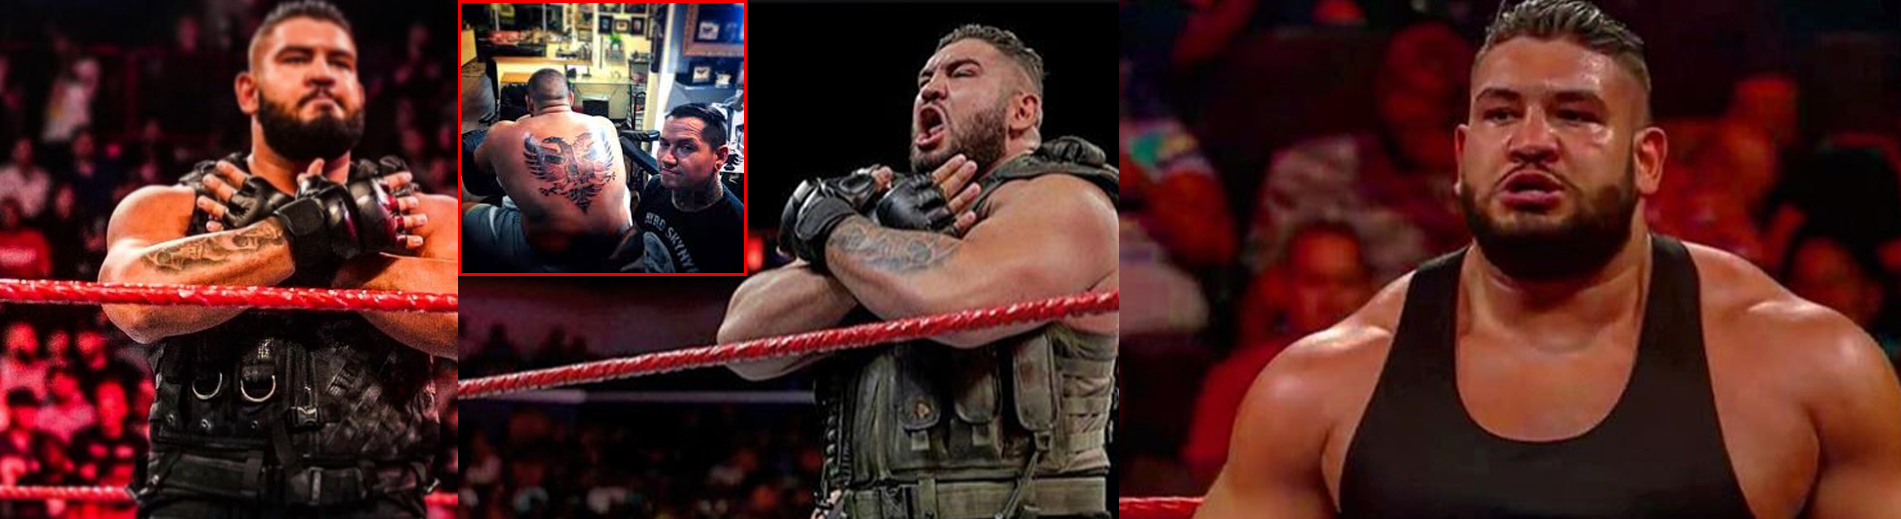 HISTORIKE/ Shqiptari merr titullin kampion në WWE